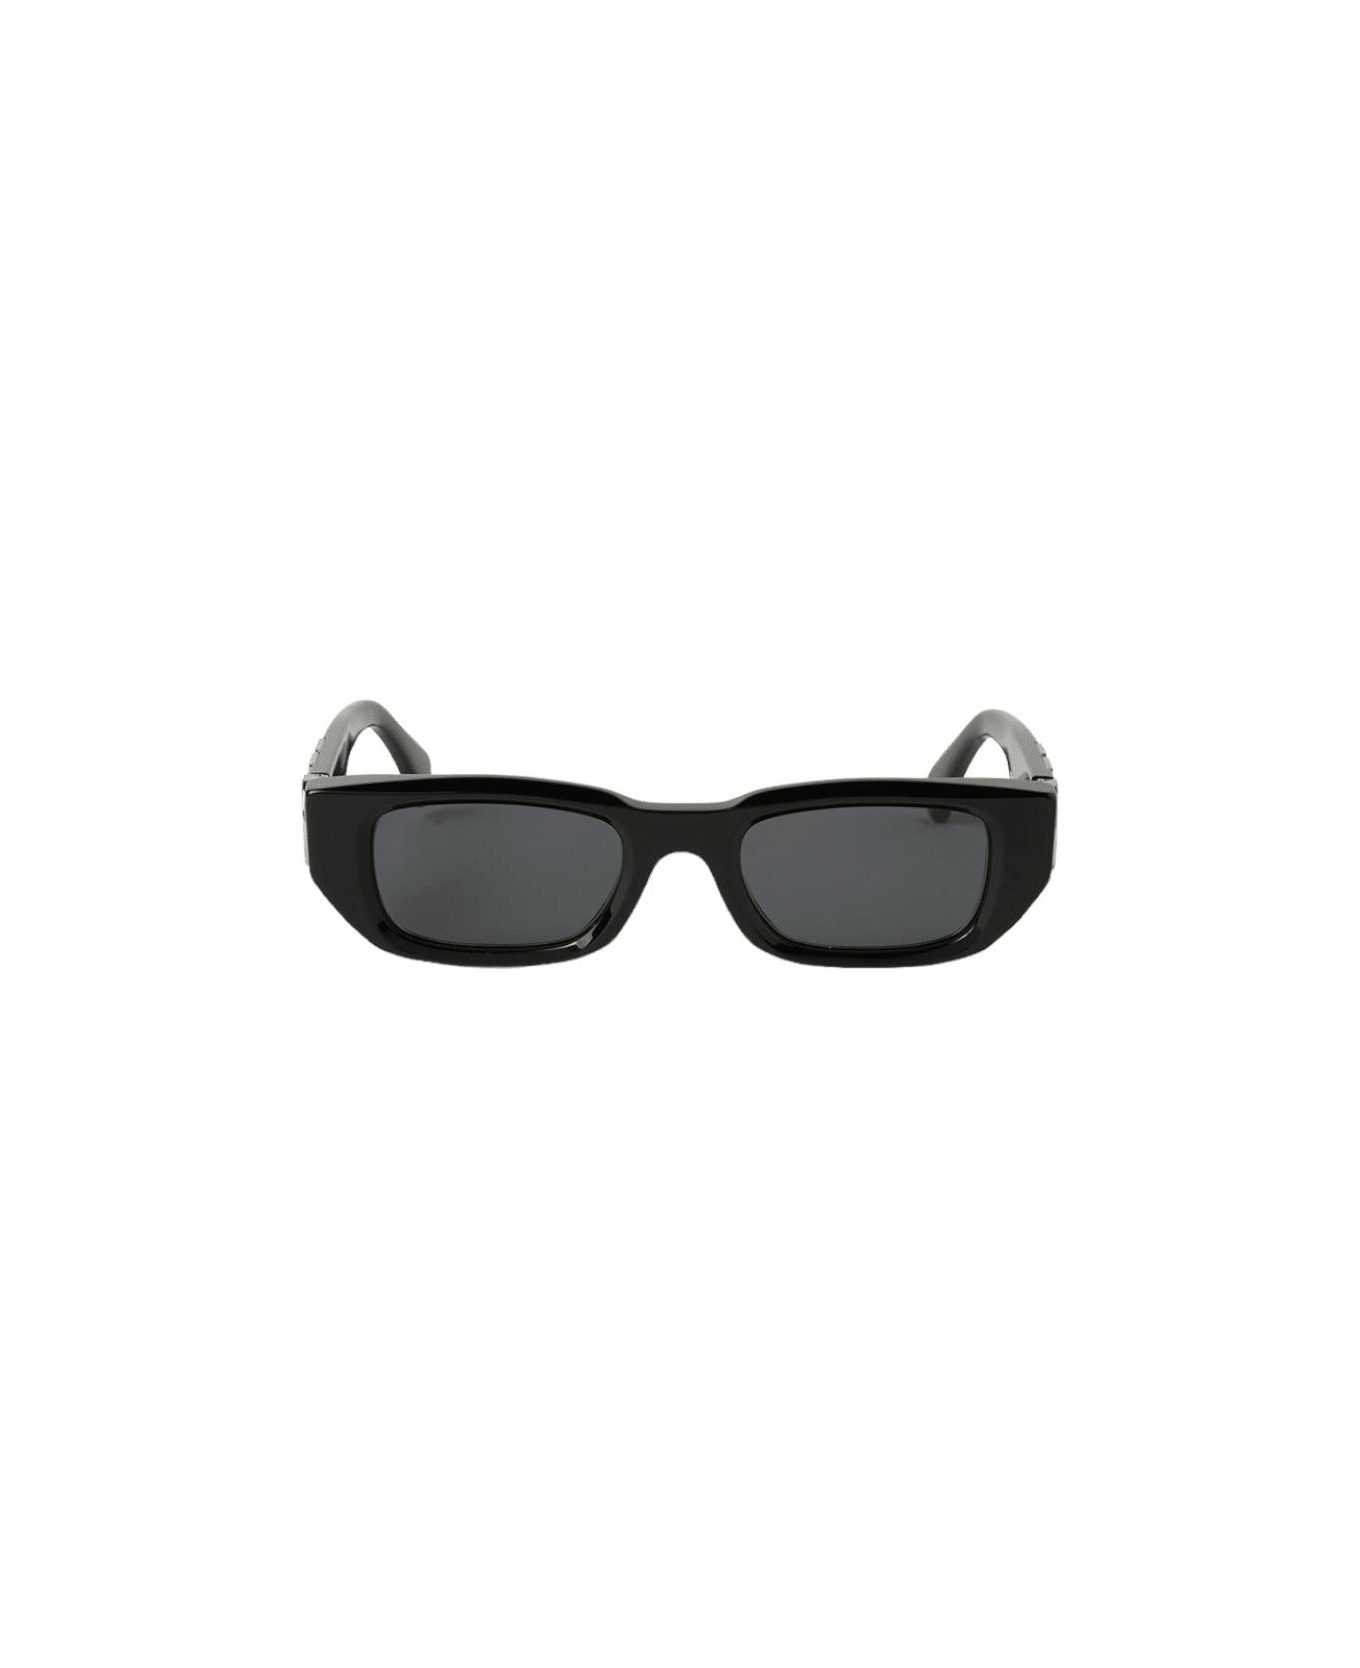 Fillmore - Oeri124 Sunglasses - 1